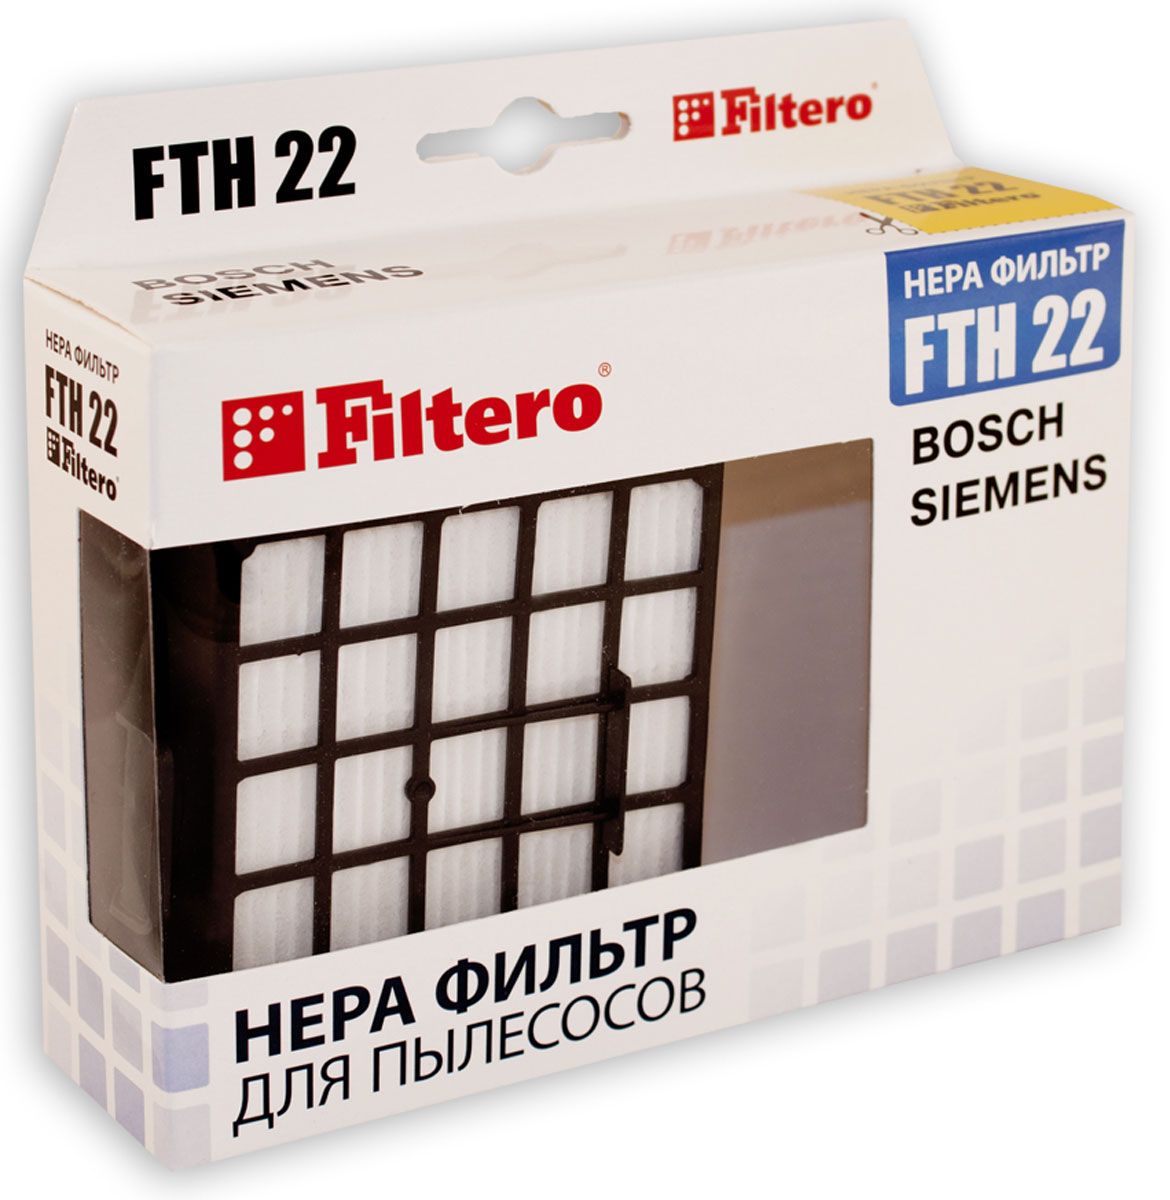 НЕРА-фильтр Filtero FTH 22 (1фильт.) фильтры hepa для пылесосов philips fc8428 fc8429 fc8436 fc8437 fc8438 fc8606 fc8607 fc8610 fc8611 2 шт